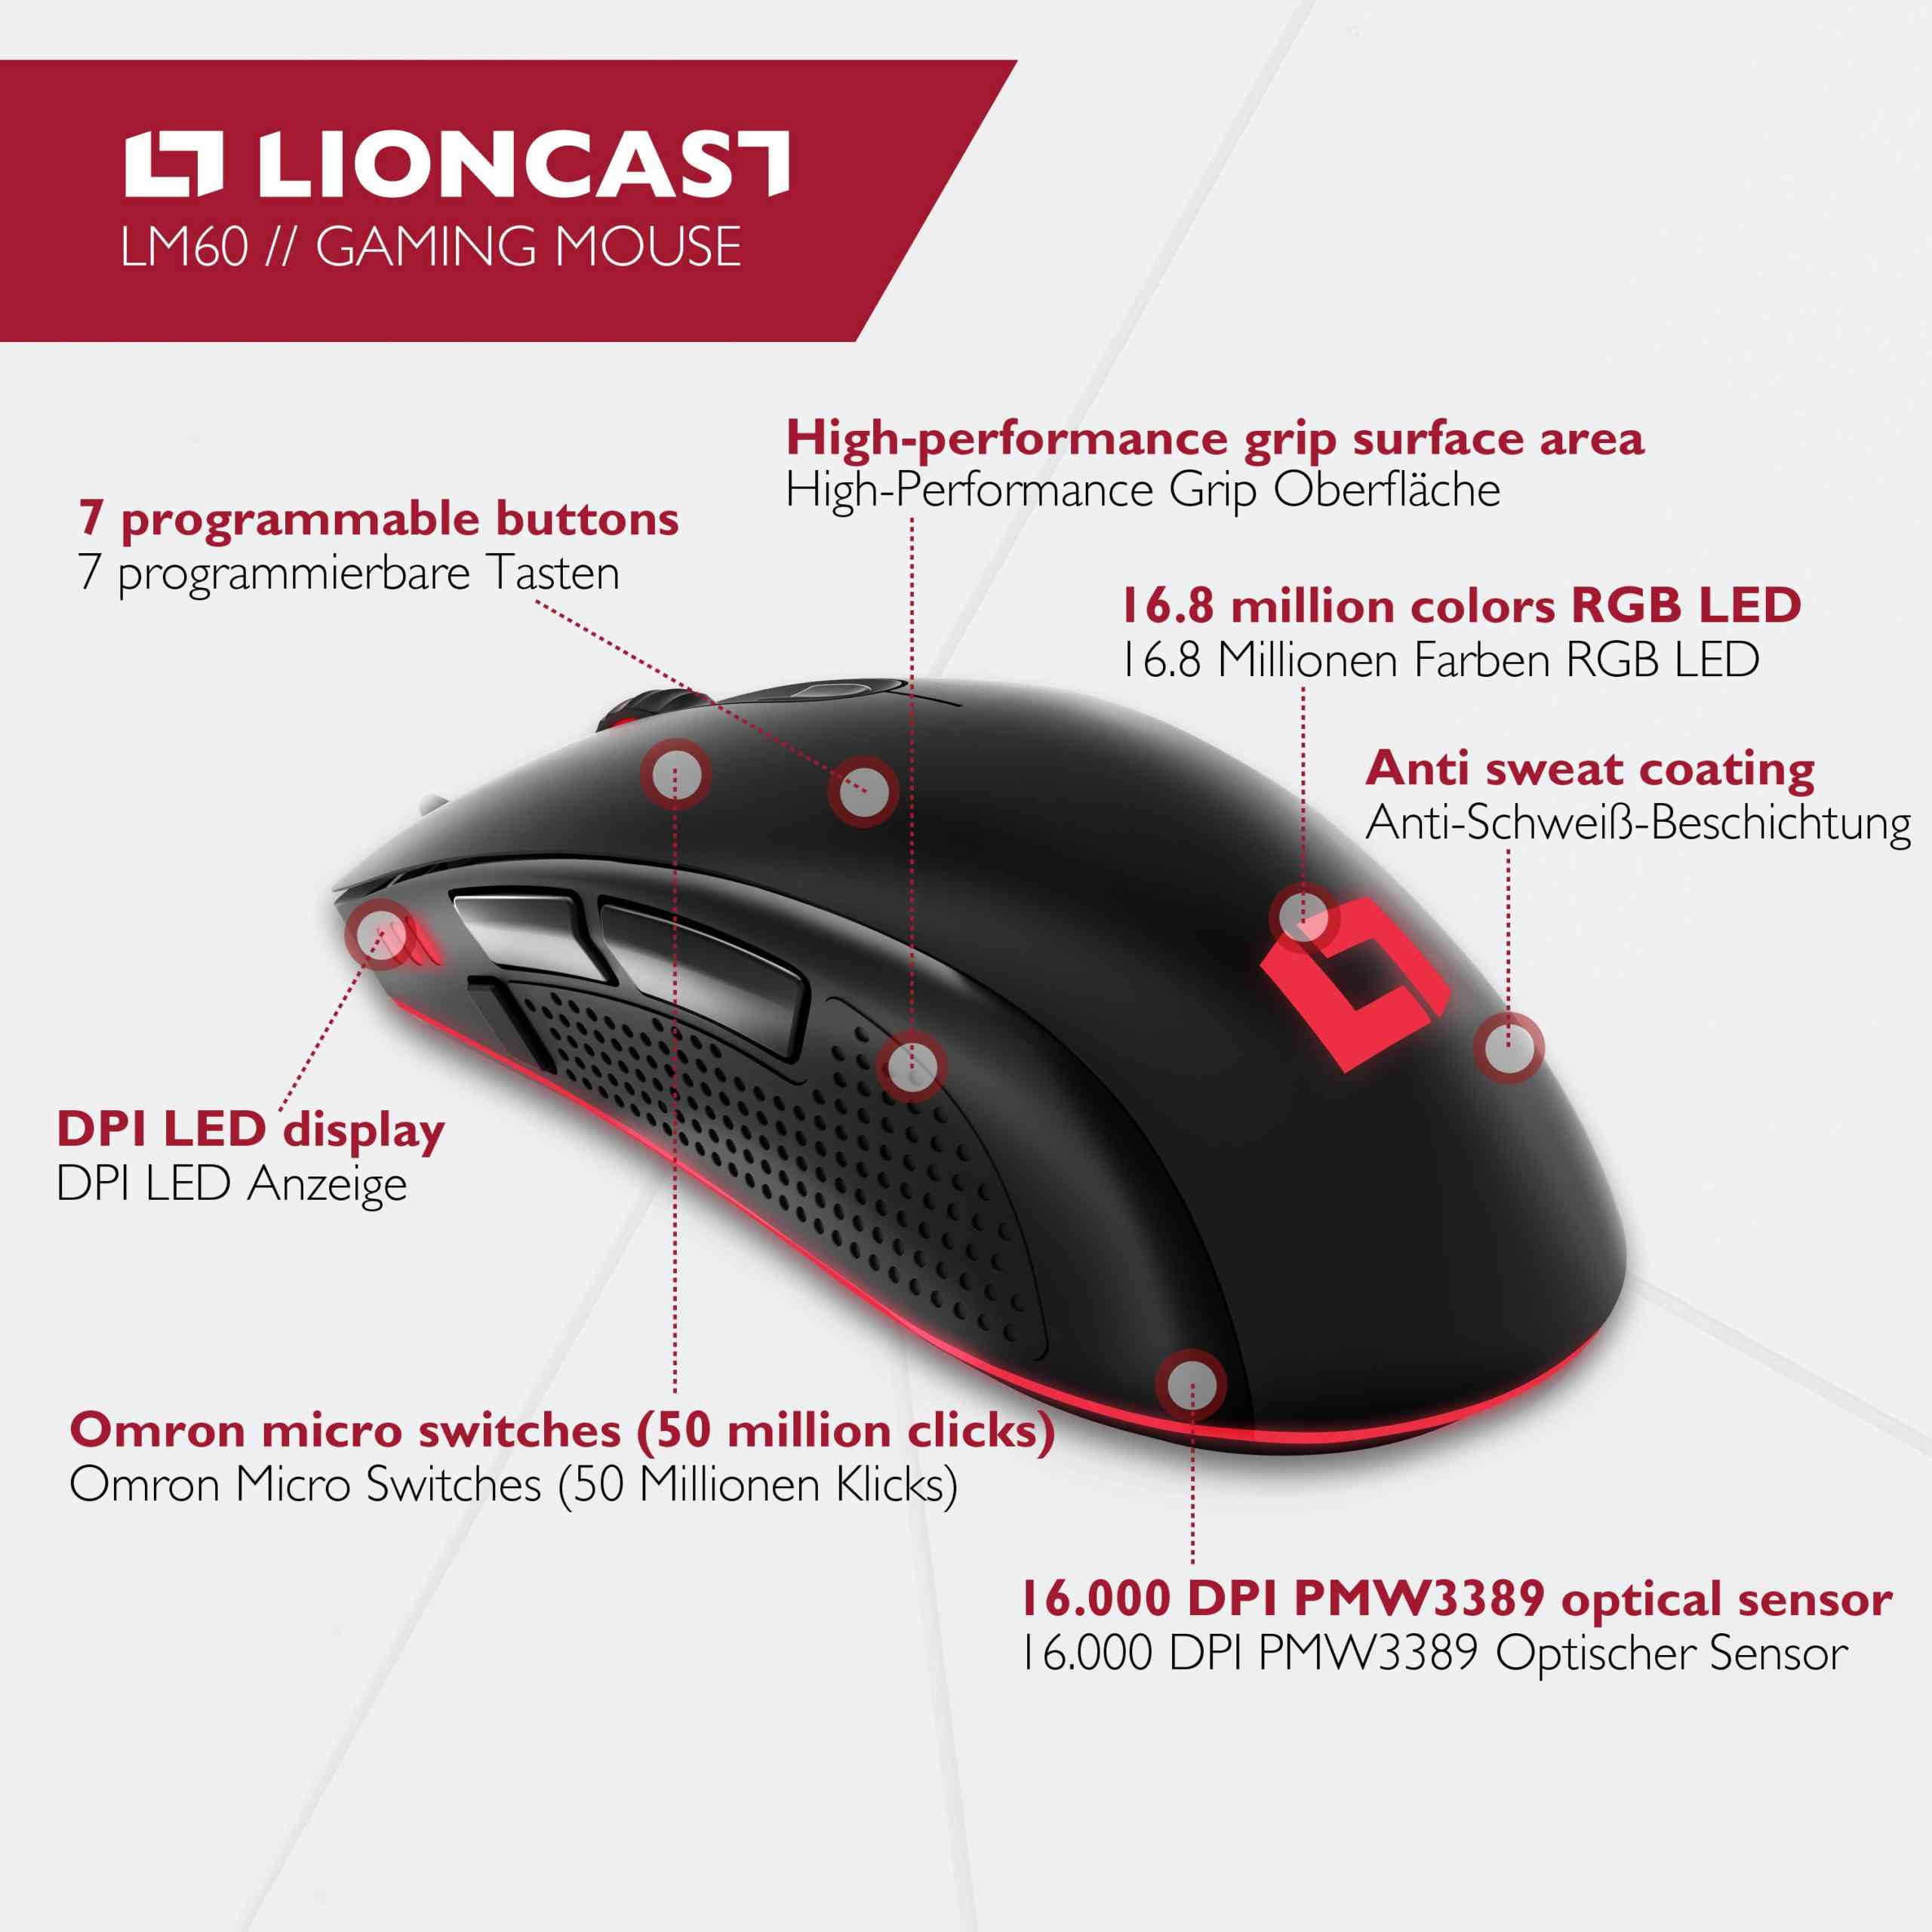 Lioncast LM60 Features